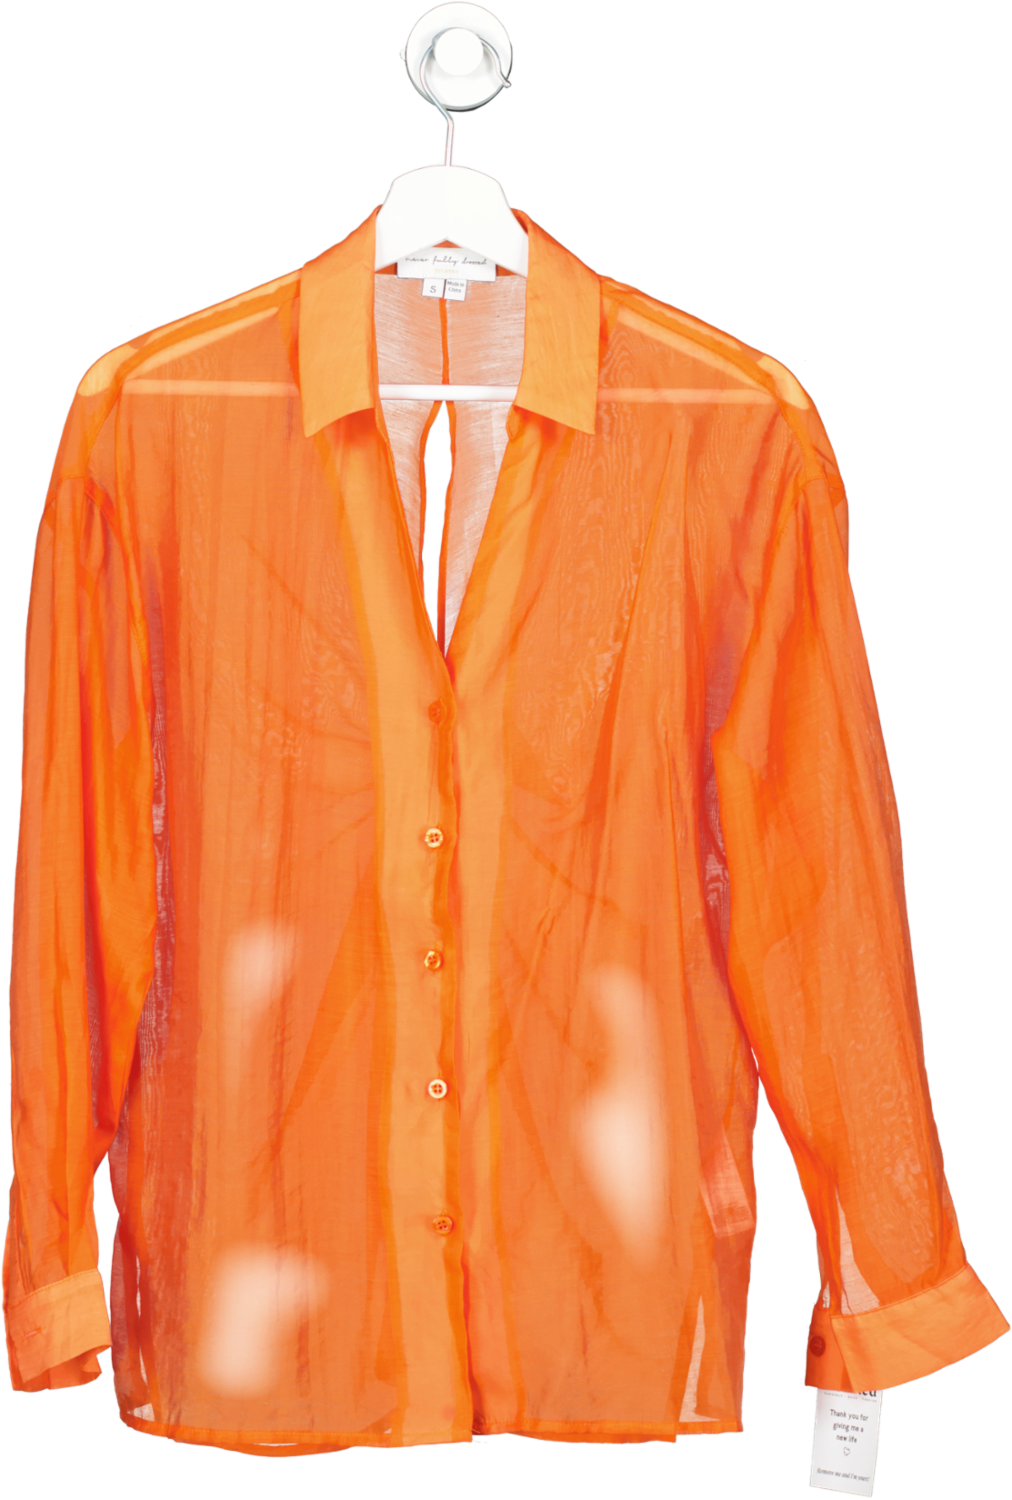 Never Fully Dressed Orange Knot Back Shirt UK S